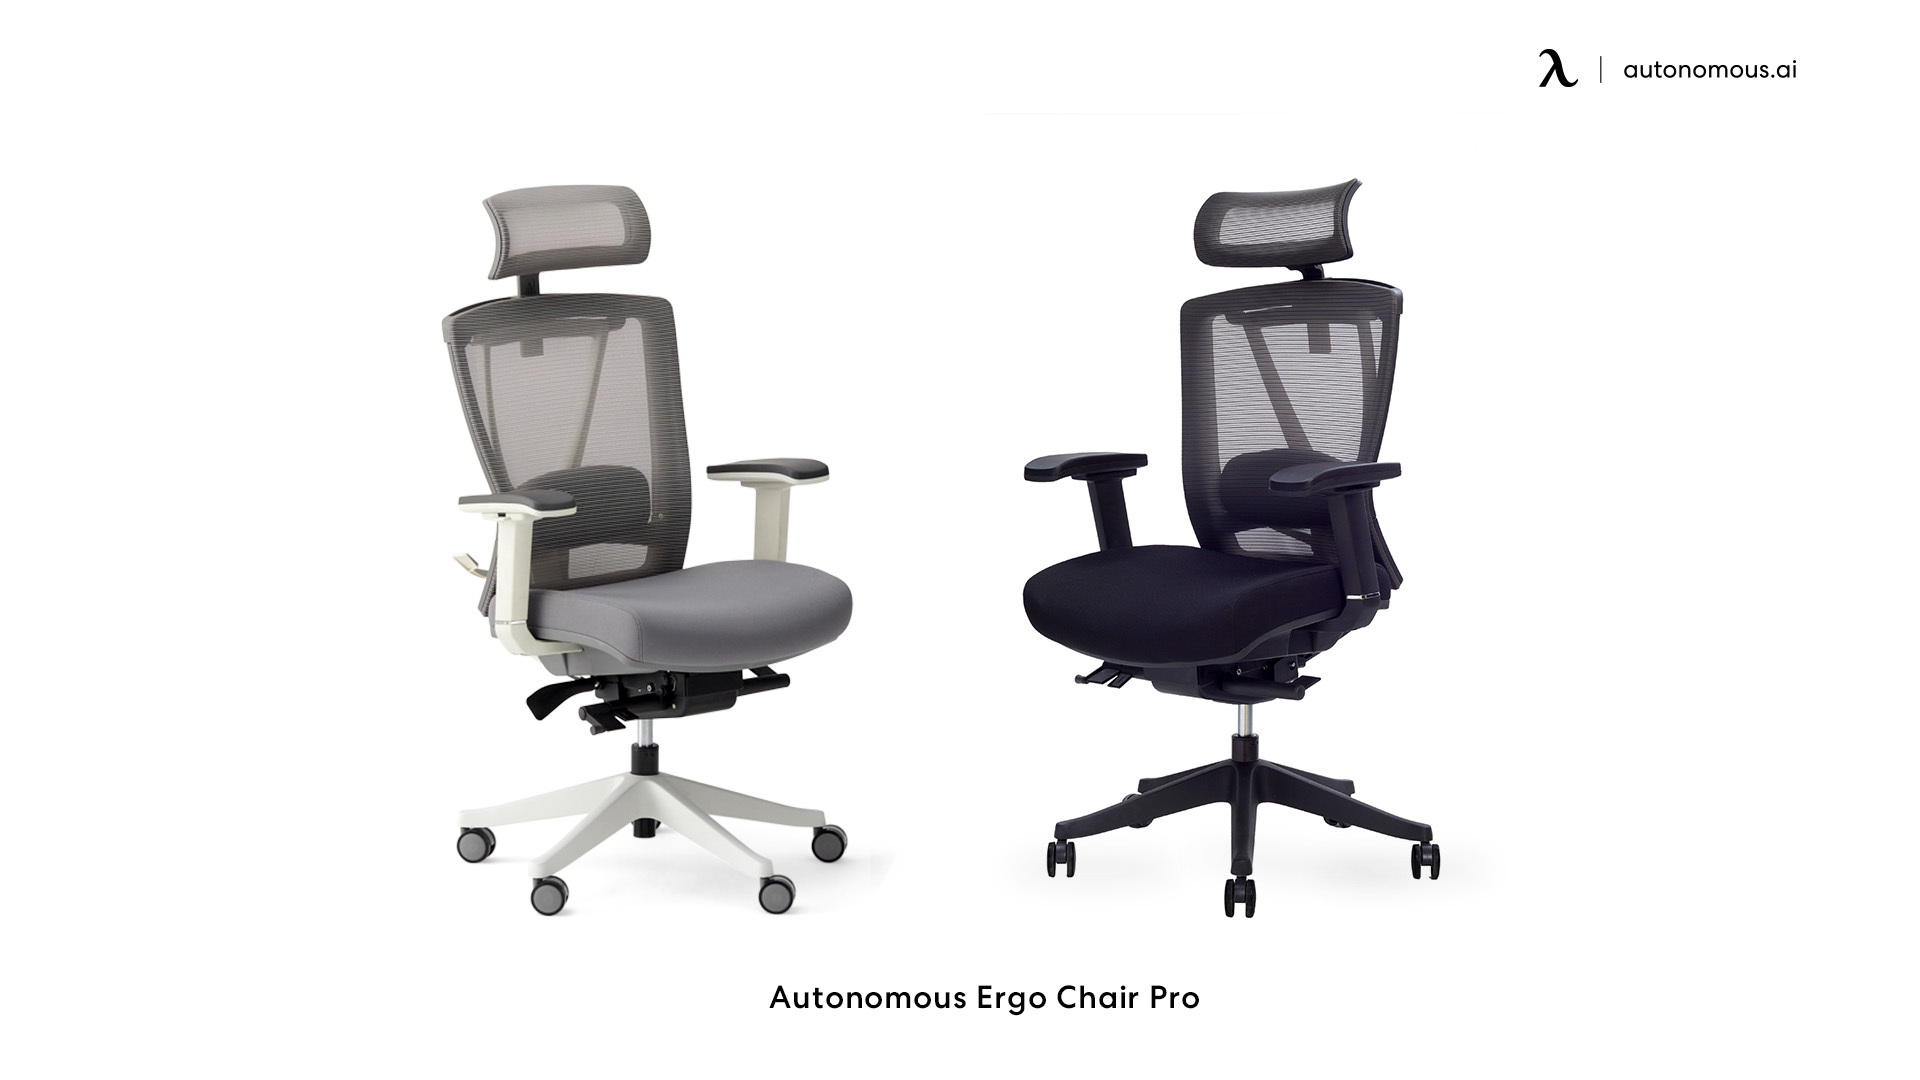 ErgoChair Pro small home office chair